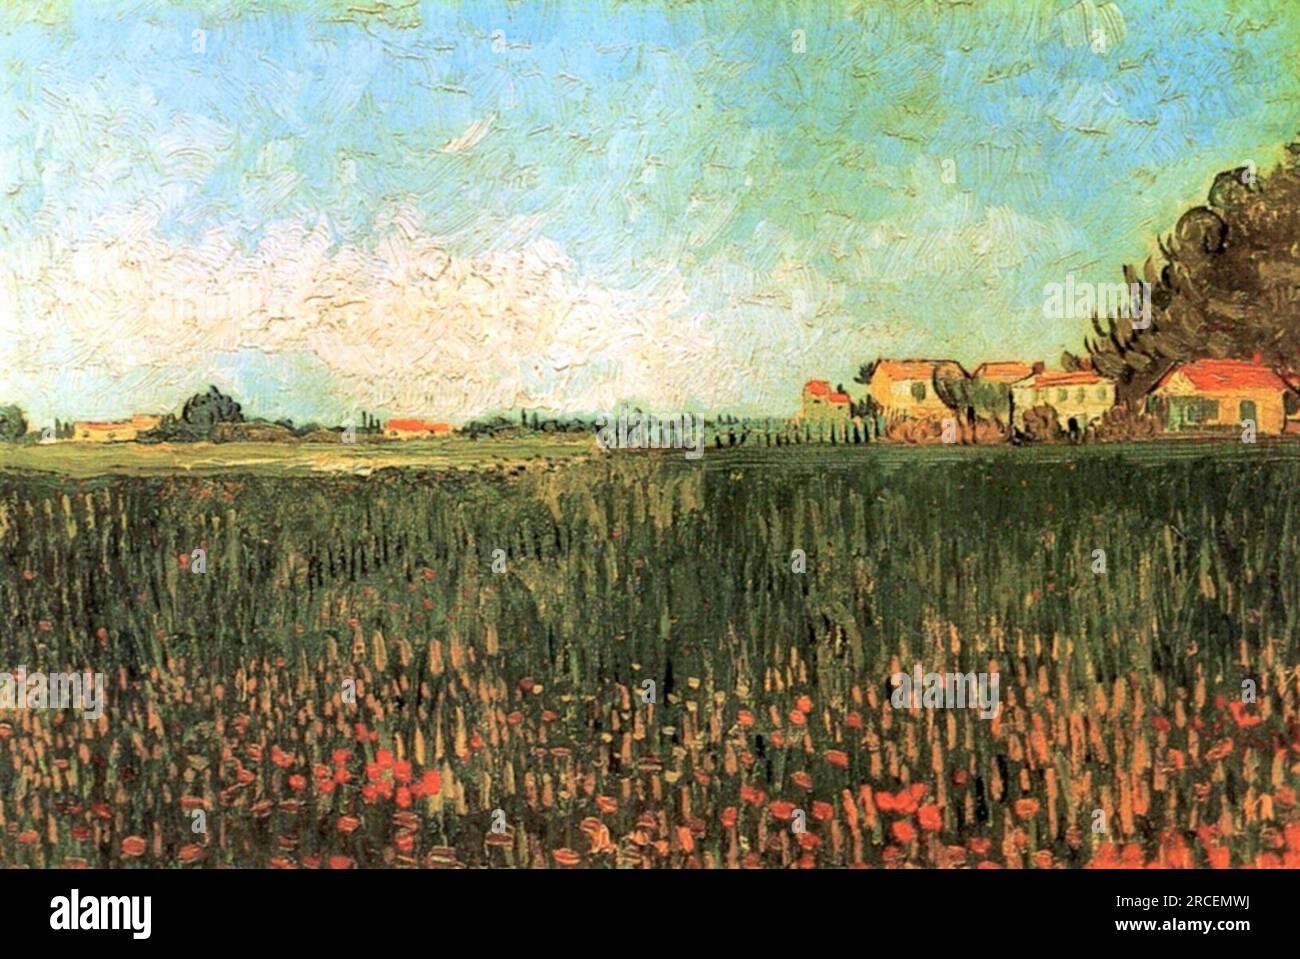 Fermes dans un champ de blé près d'Arles 1888 ; Arles, Bouches-du-Rhône, France par Vincent van Gogh Banque D'Images